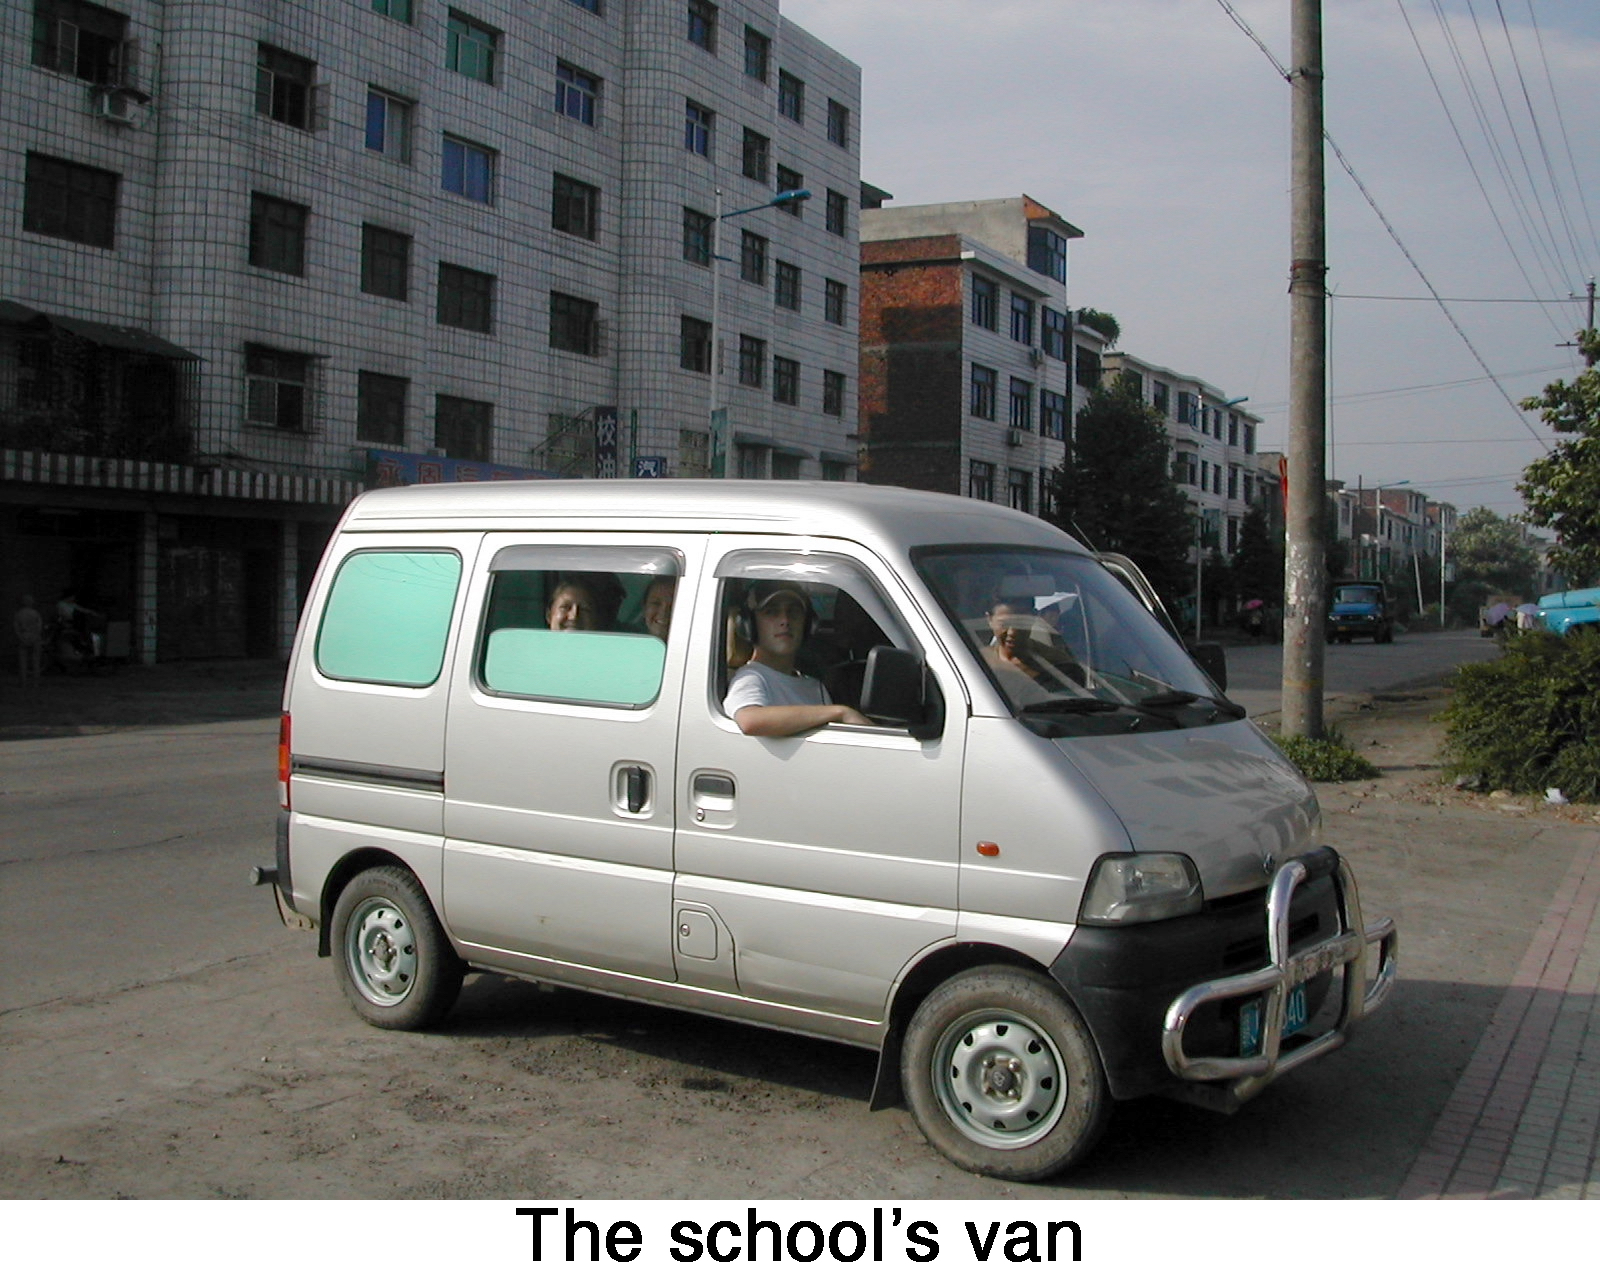 A small grey van